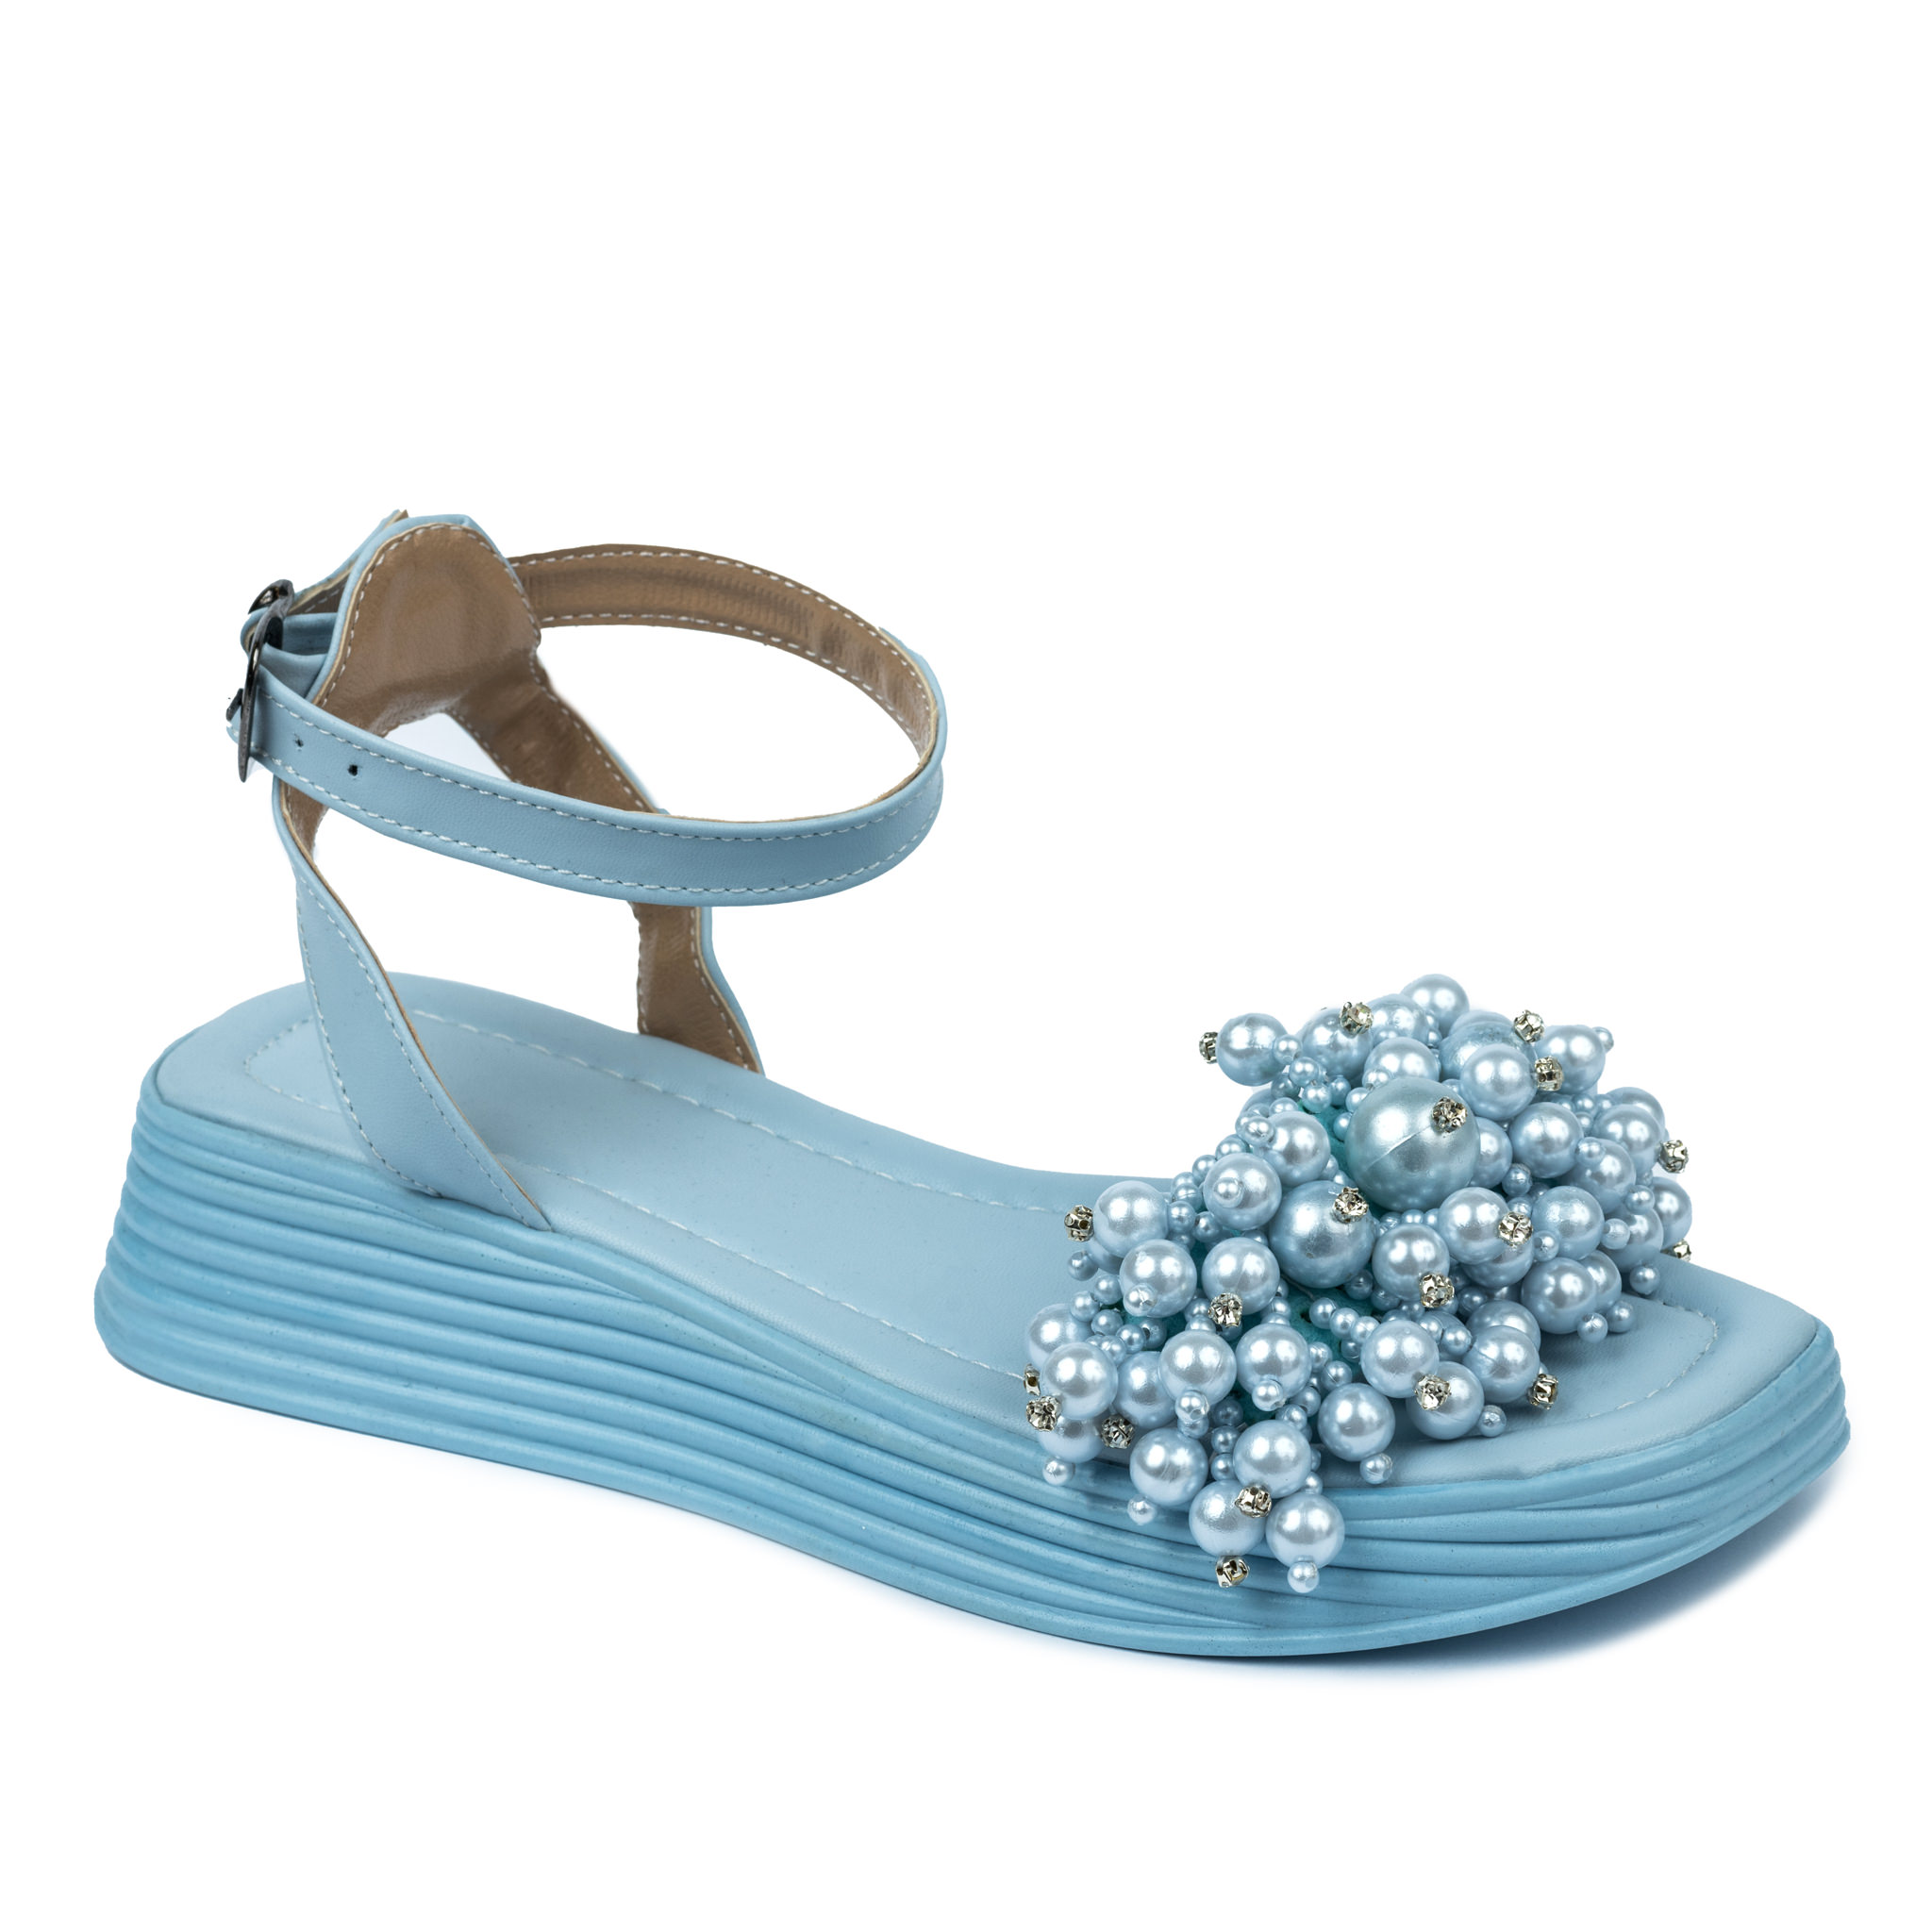 Women sandals A633 - BLUE